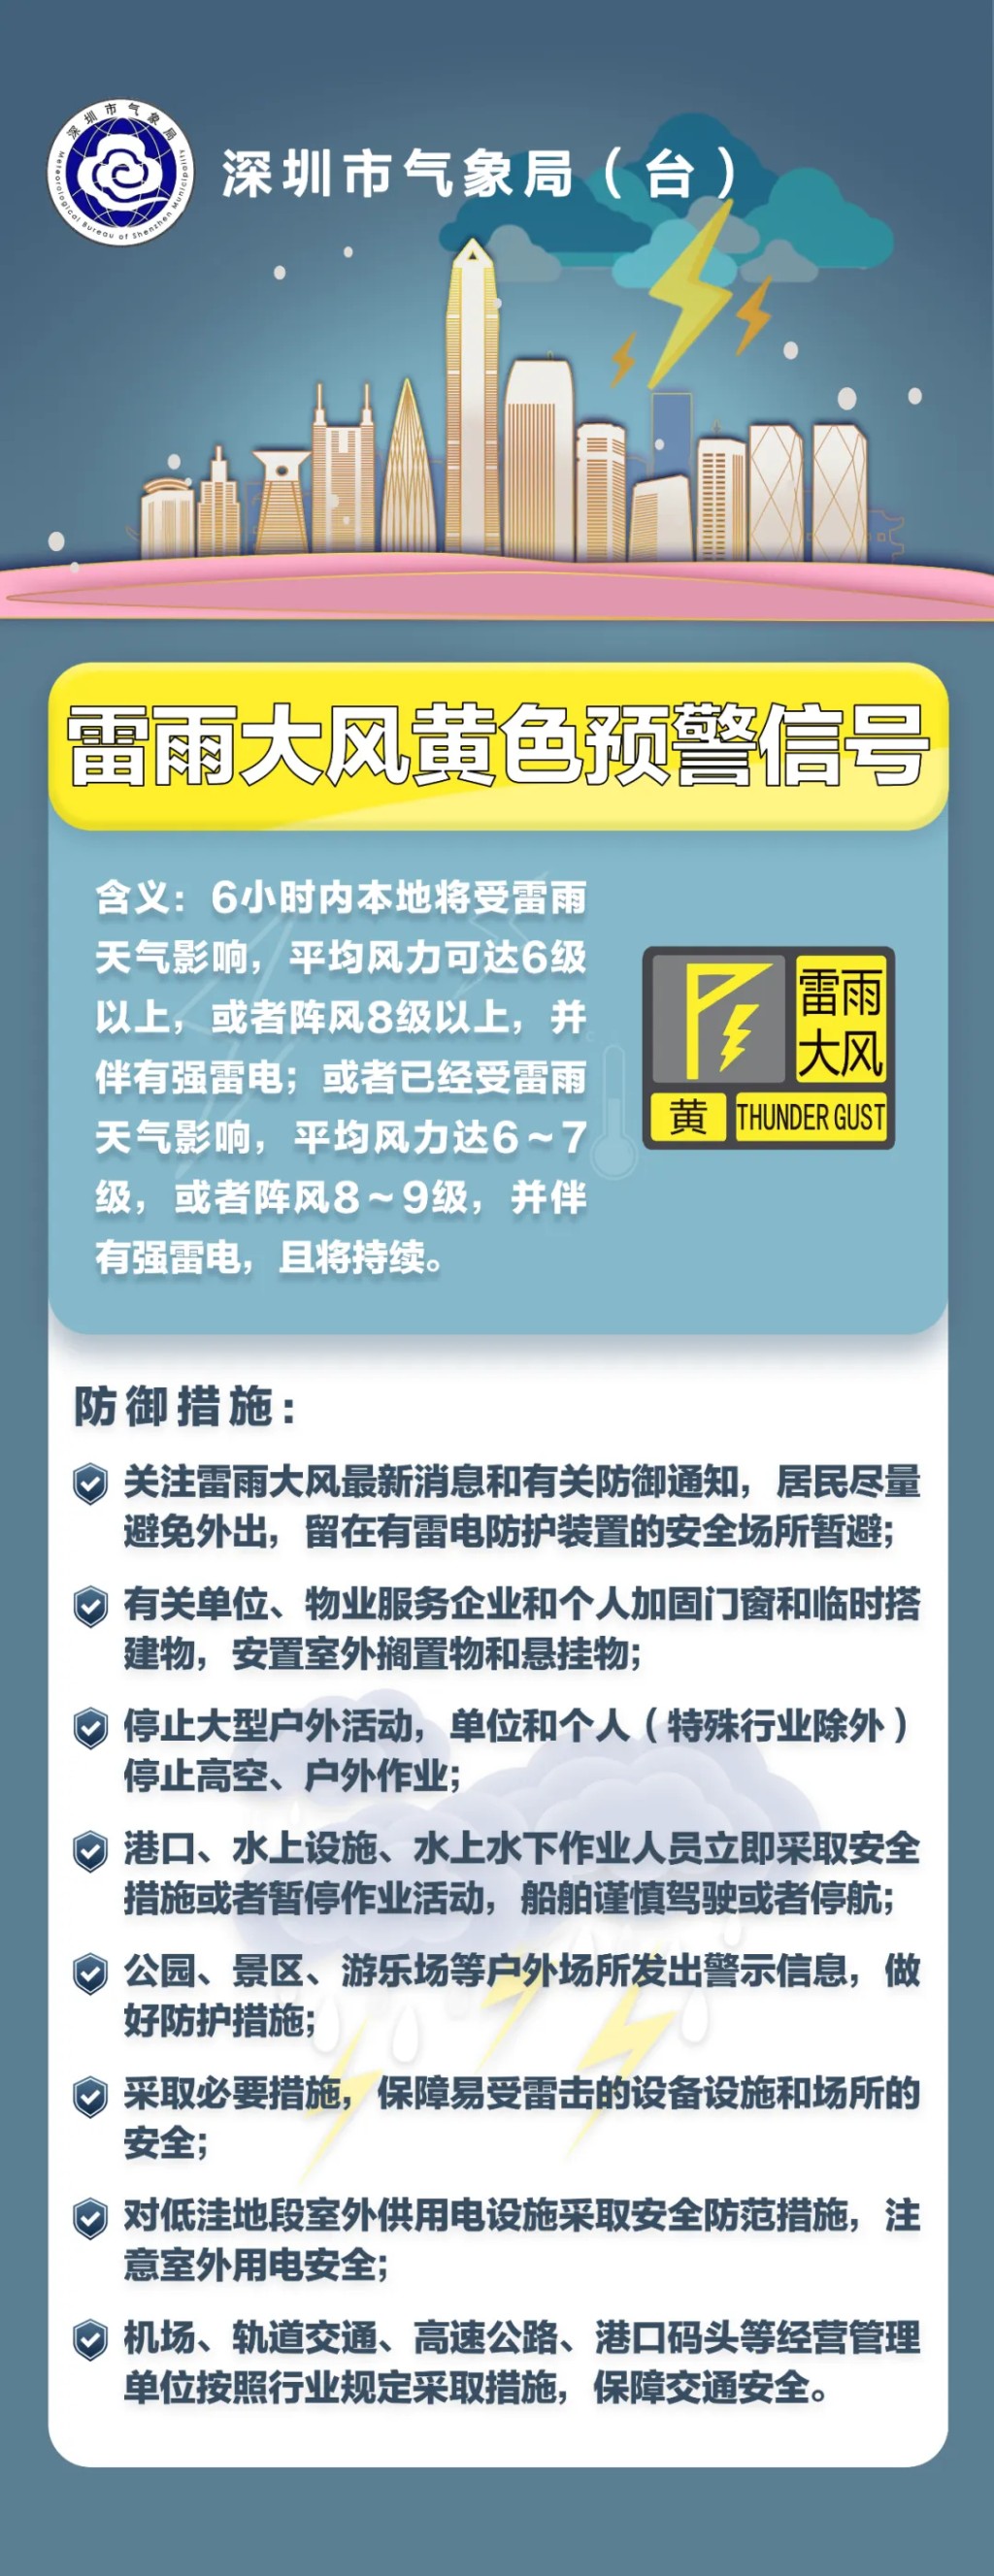 深圳多區暴雨黃色預警生效。